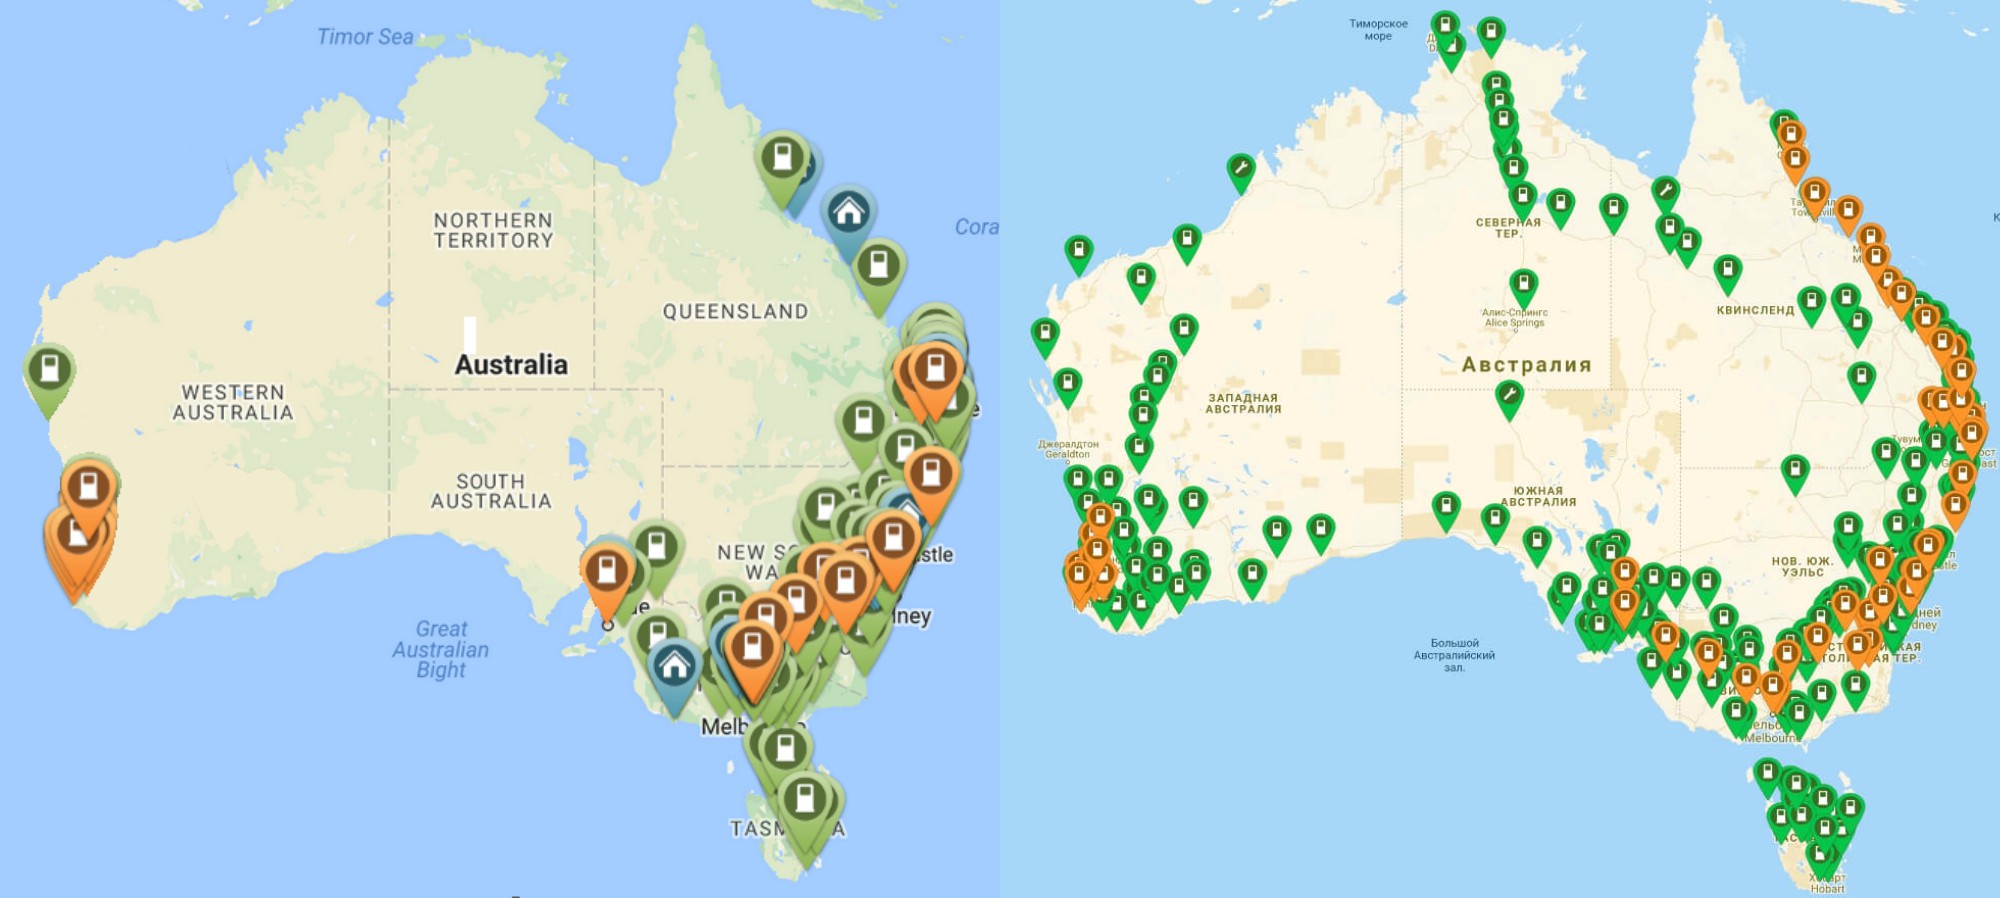 Сеть зарядных станций на 2016 и 2018 года в Австралии